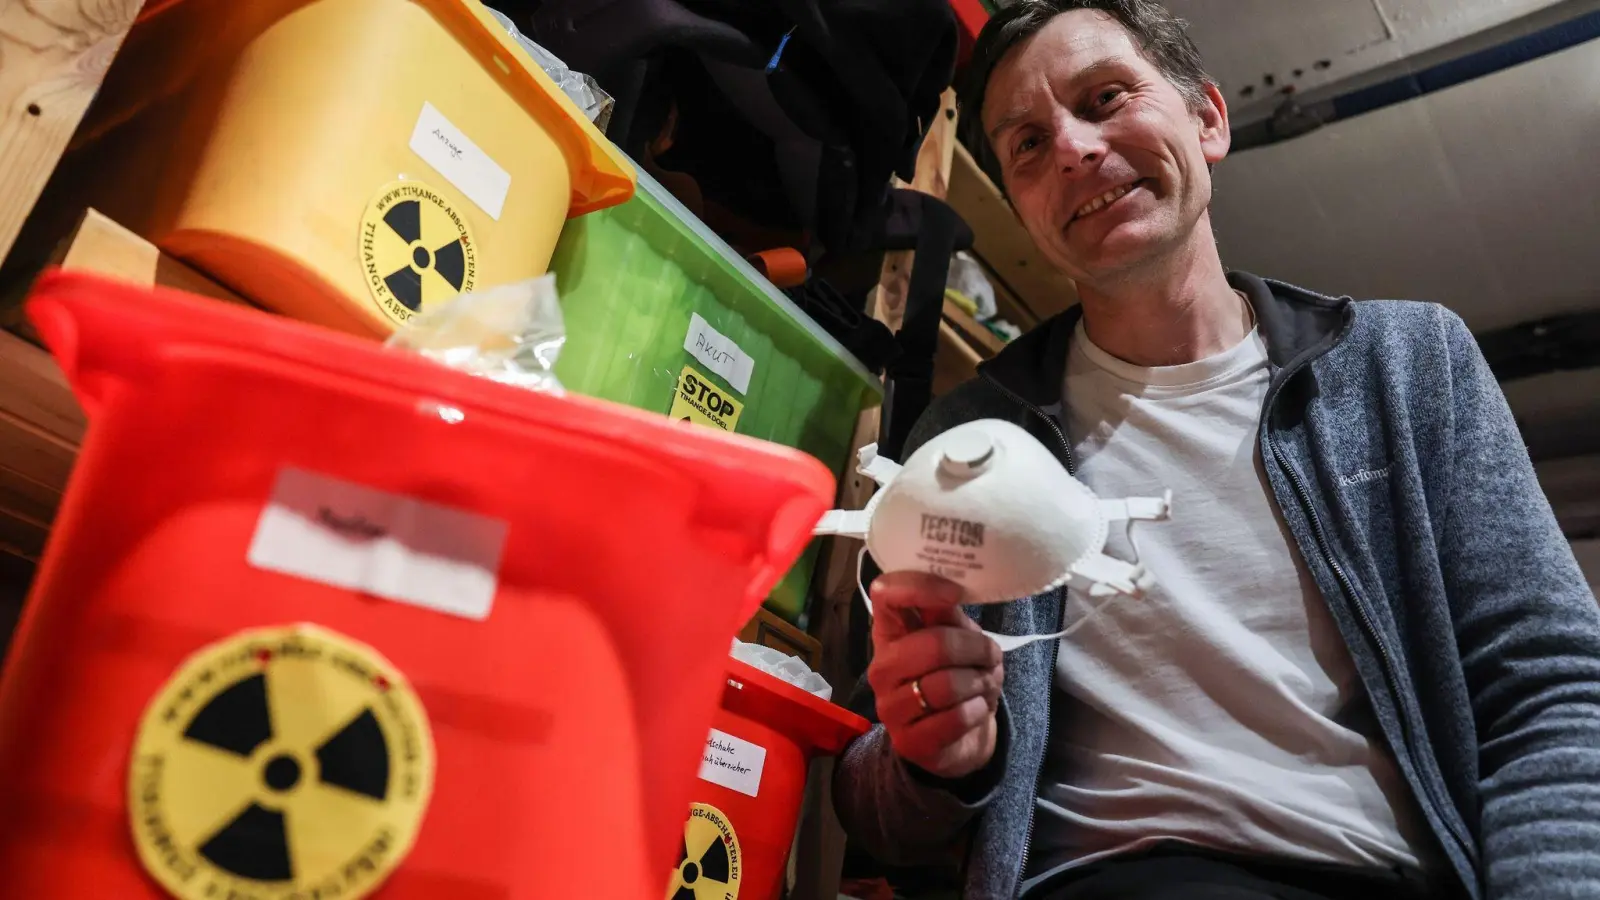 Der Anti-Atomkraft-Aktivist Gereon Hermens sitzt in seinem Keller neben Kisten mit Schutzausrüstungen. (Foto: Oliver Berg/dpa)